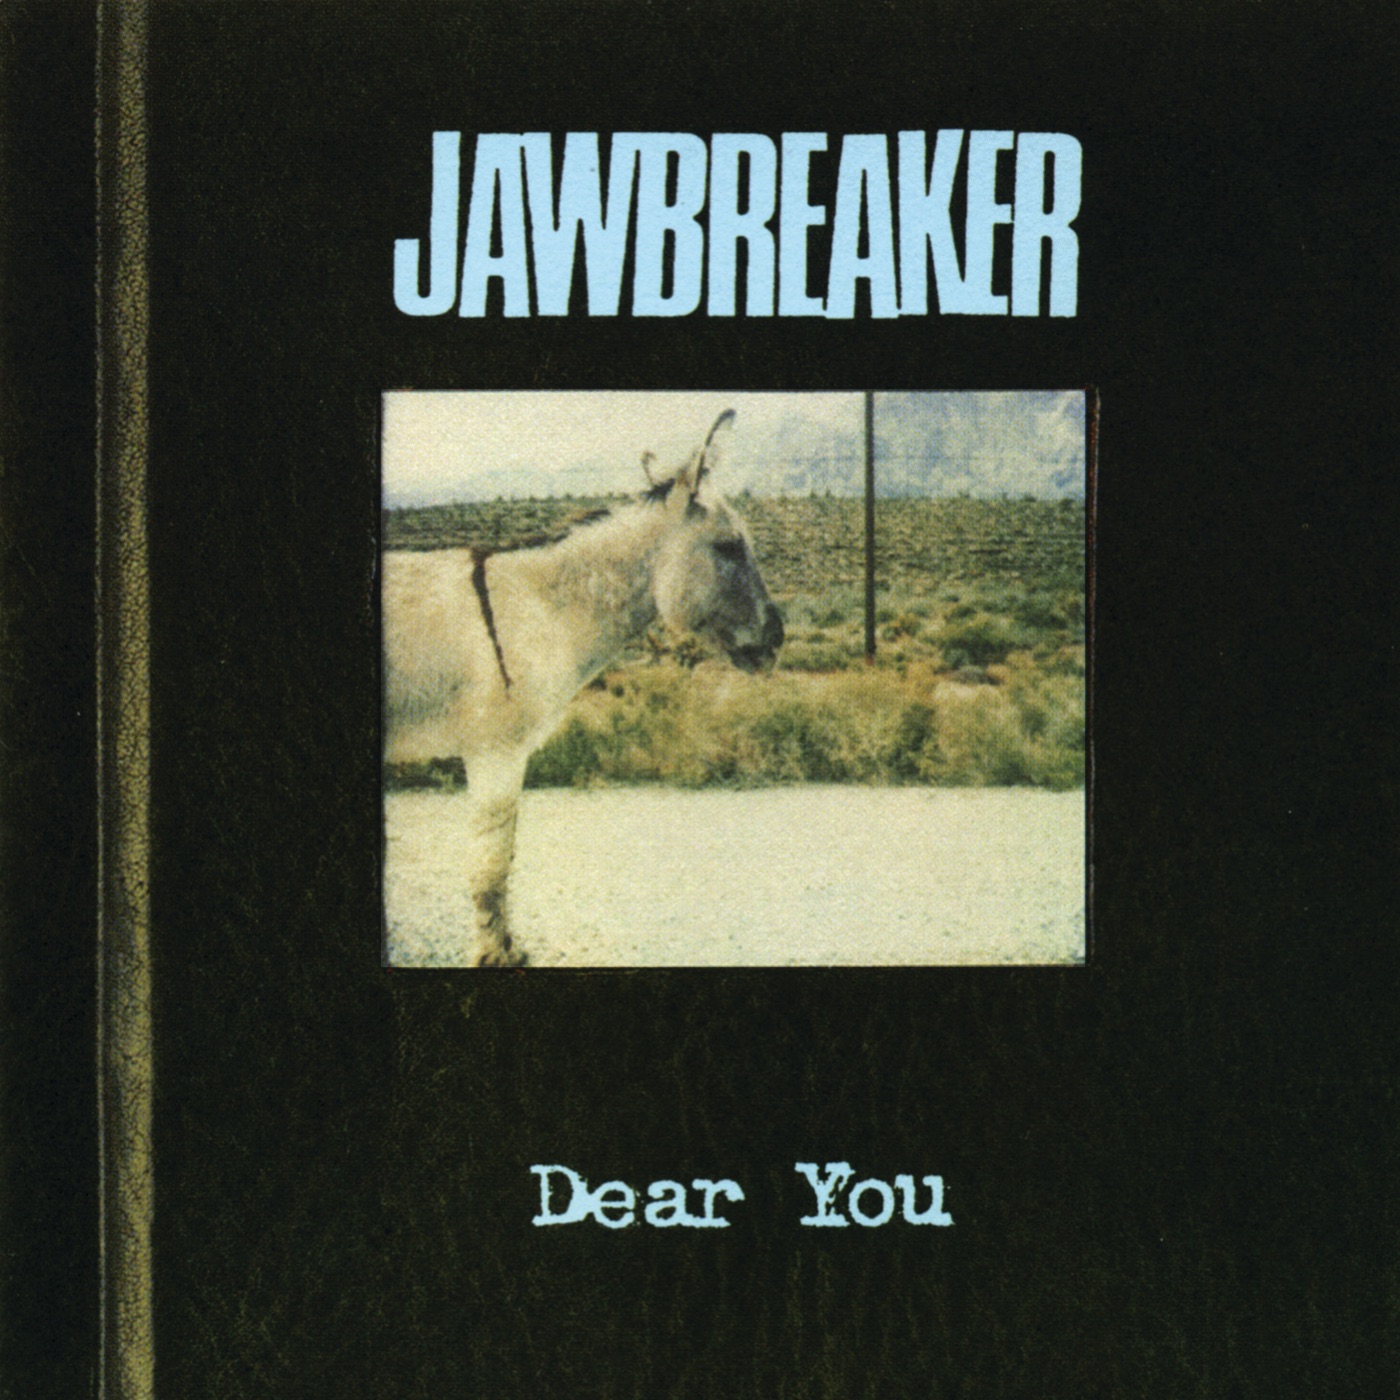 Dear You by Jawbreaker